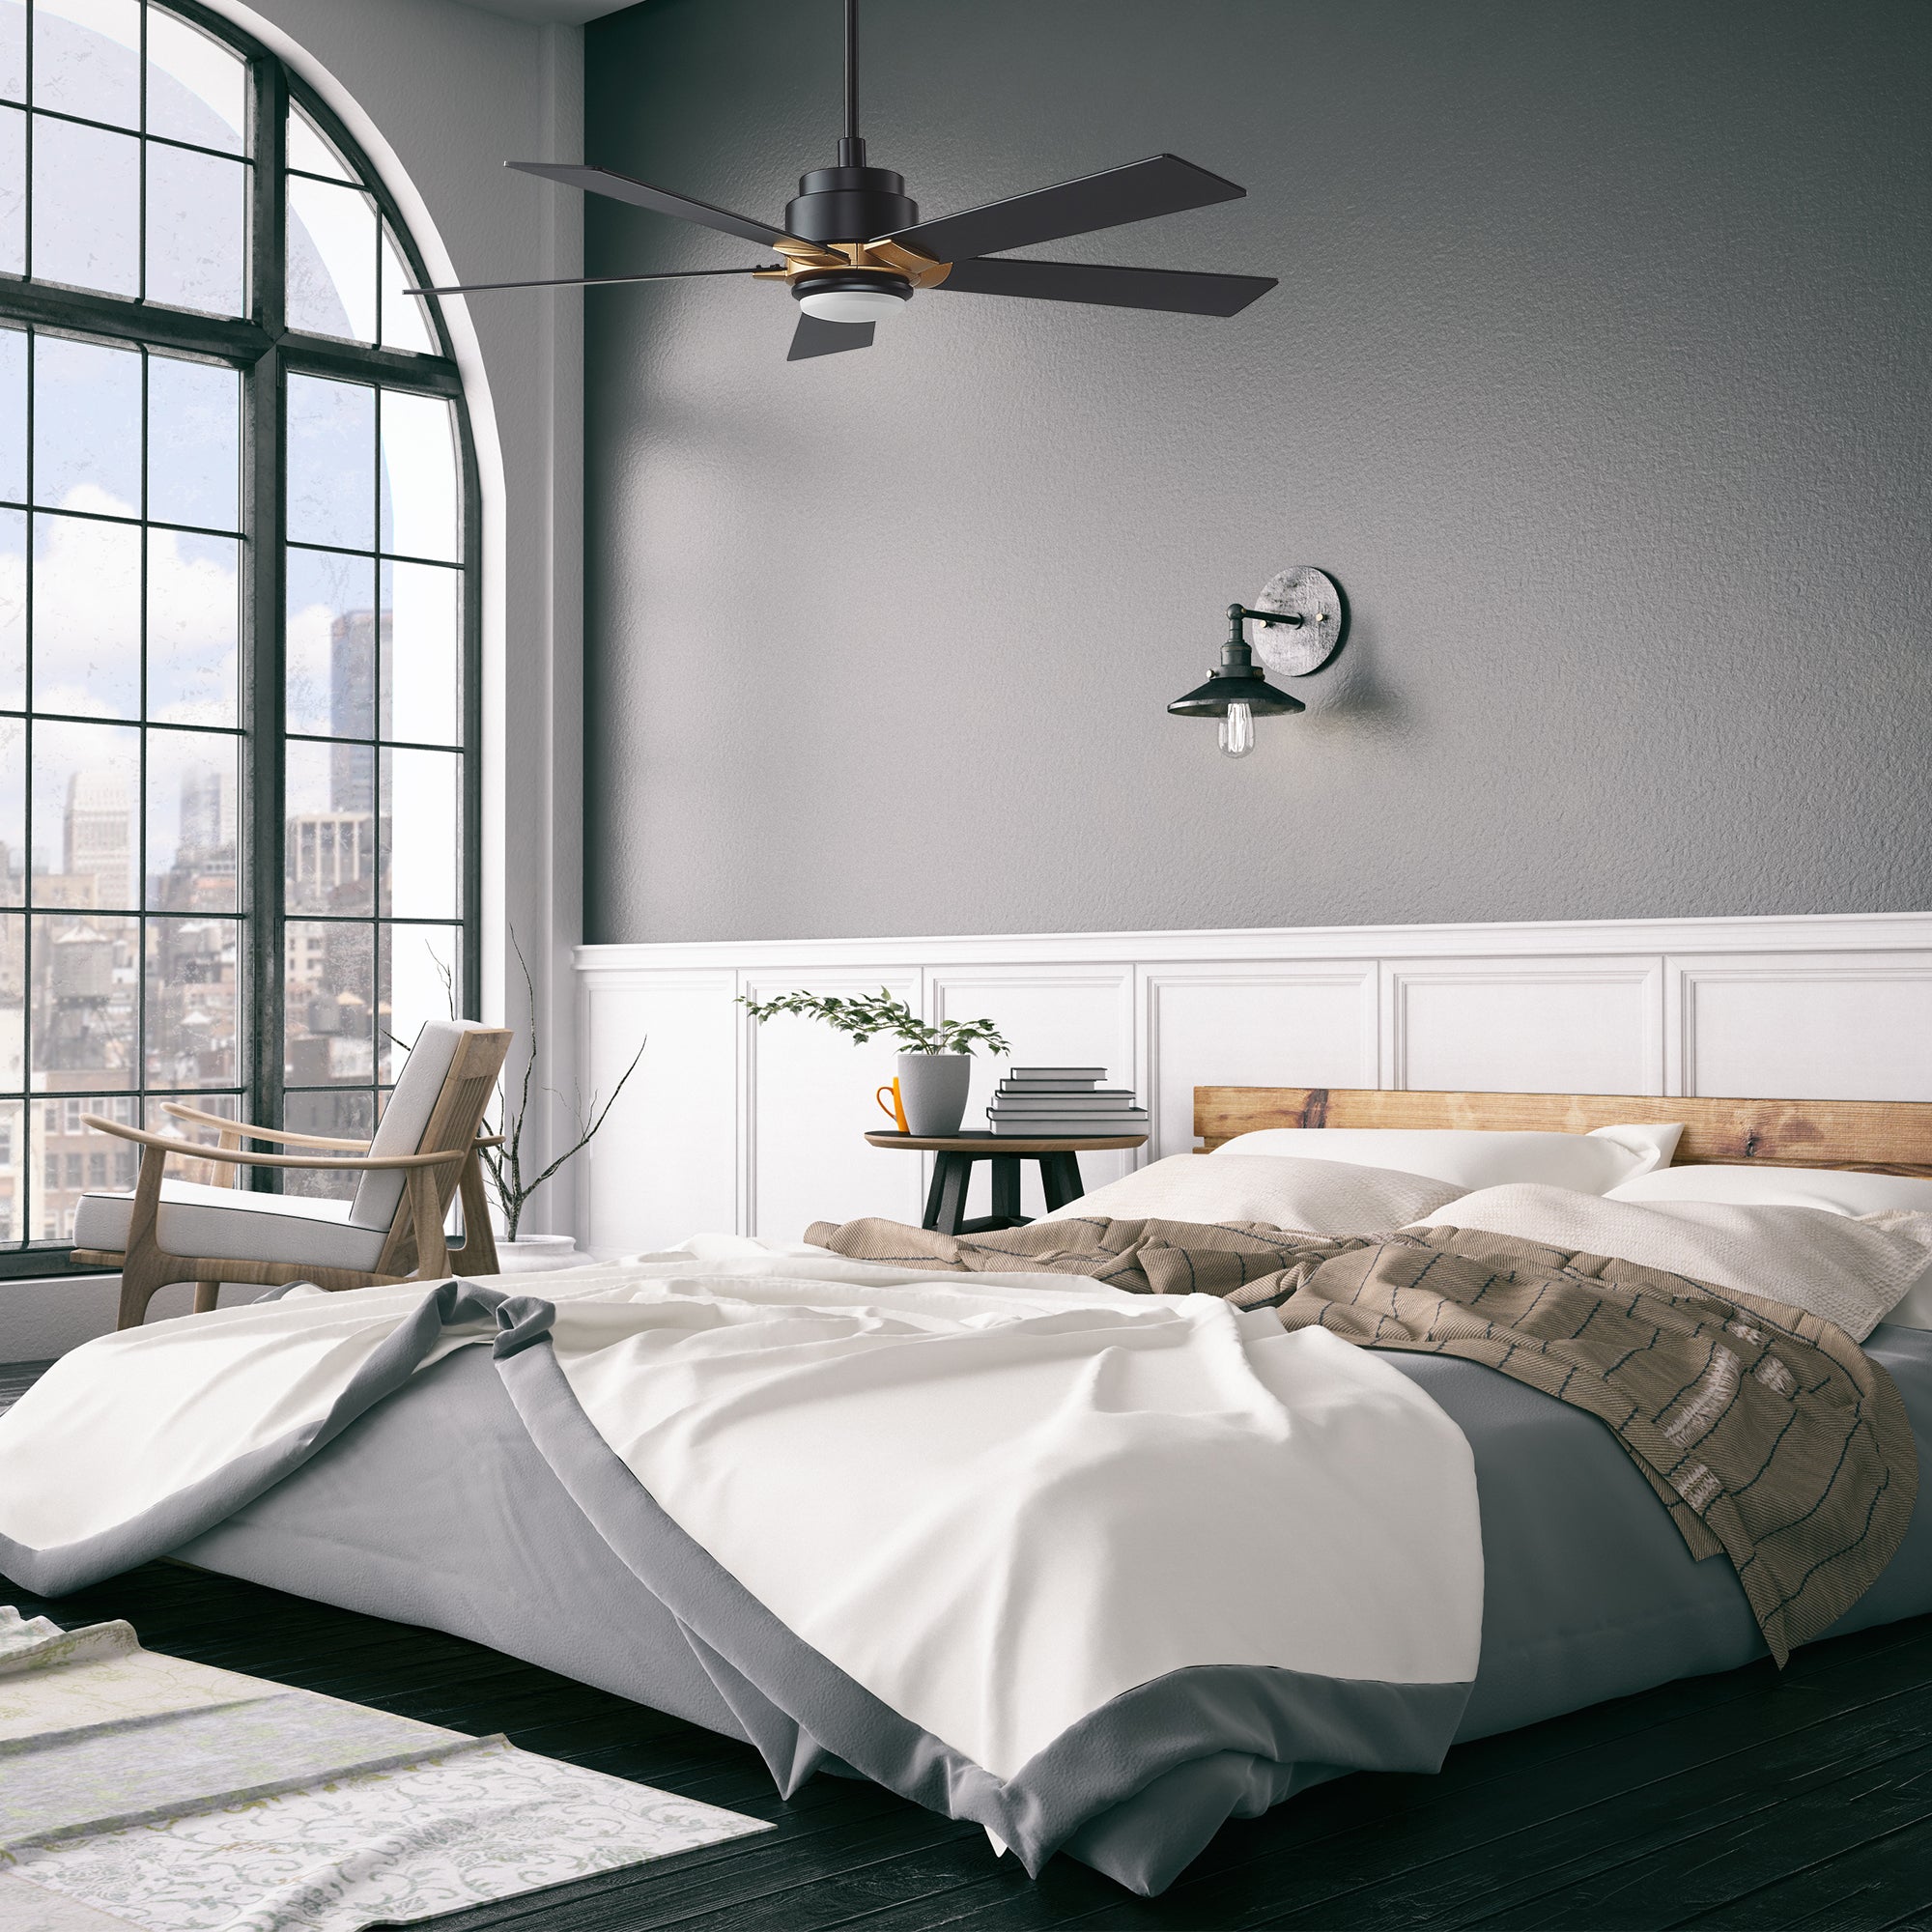 Carro ASPEN outdoor ceiling fan, downrod mount design, have 5 black fan blades, installed in a modern bedroom. 